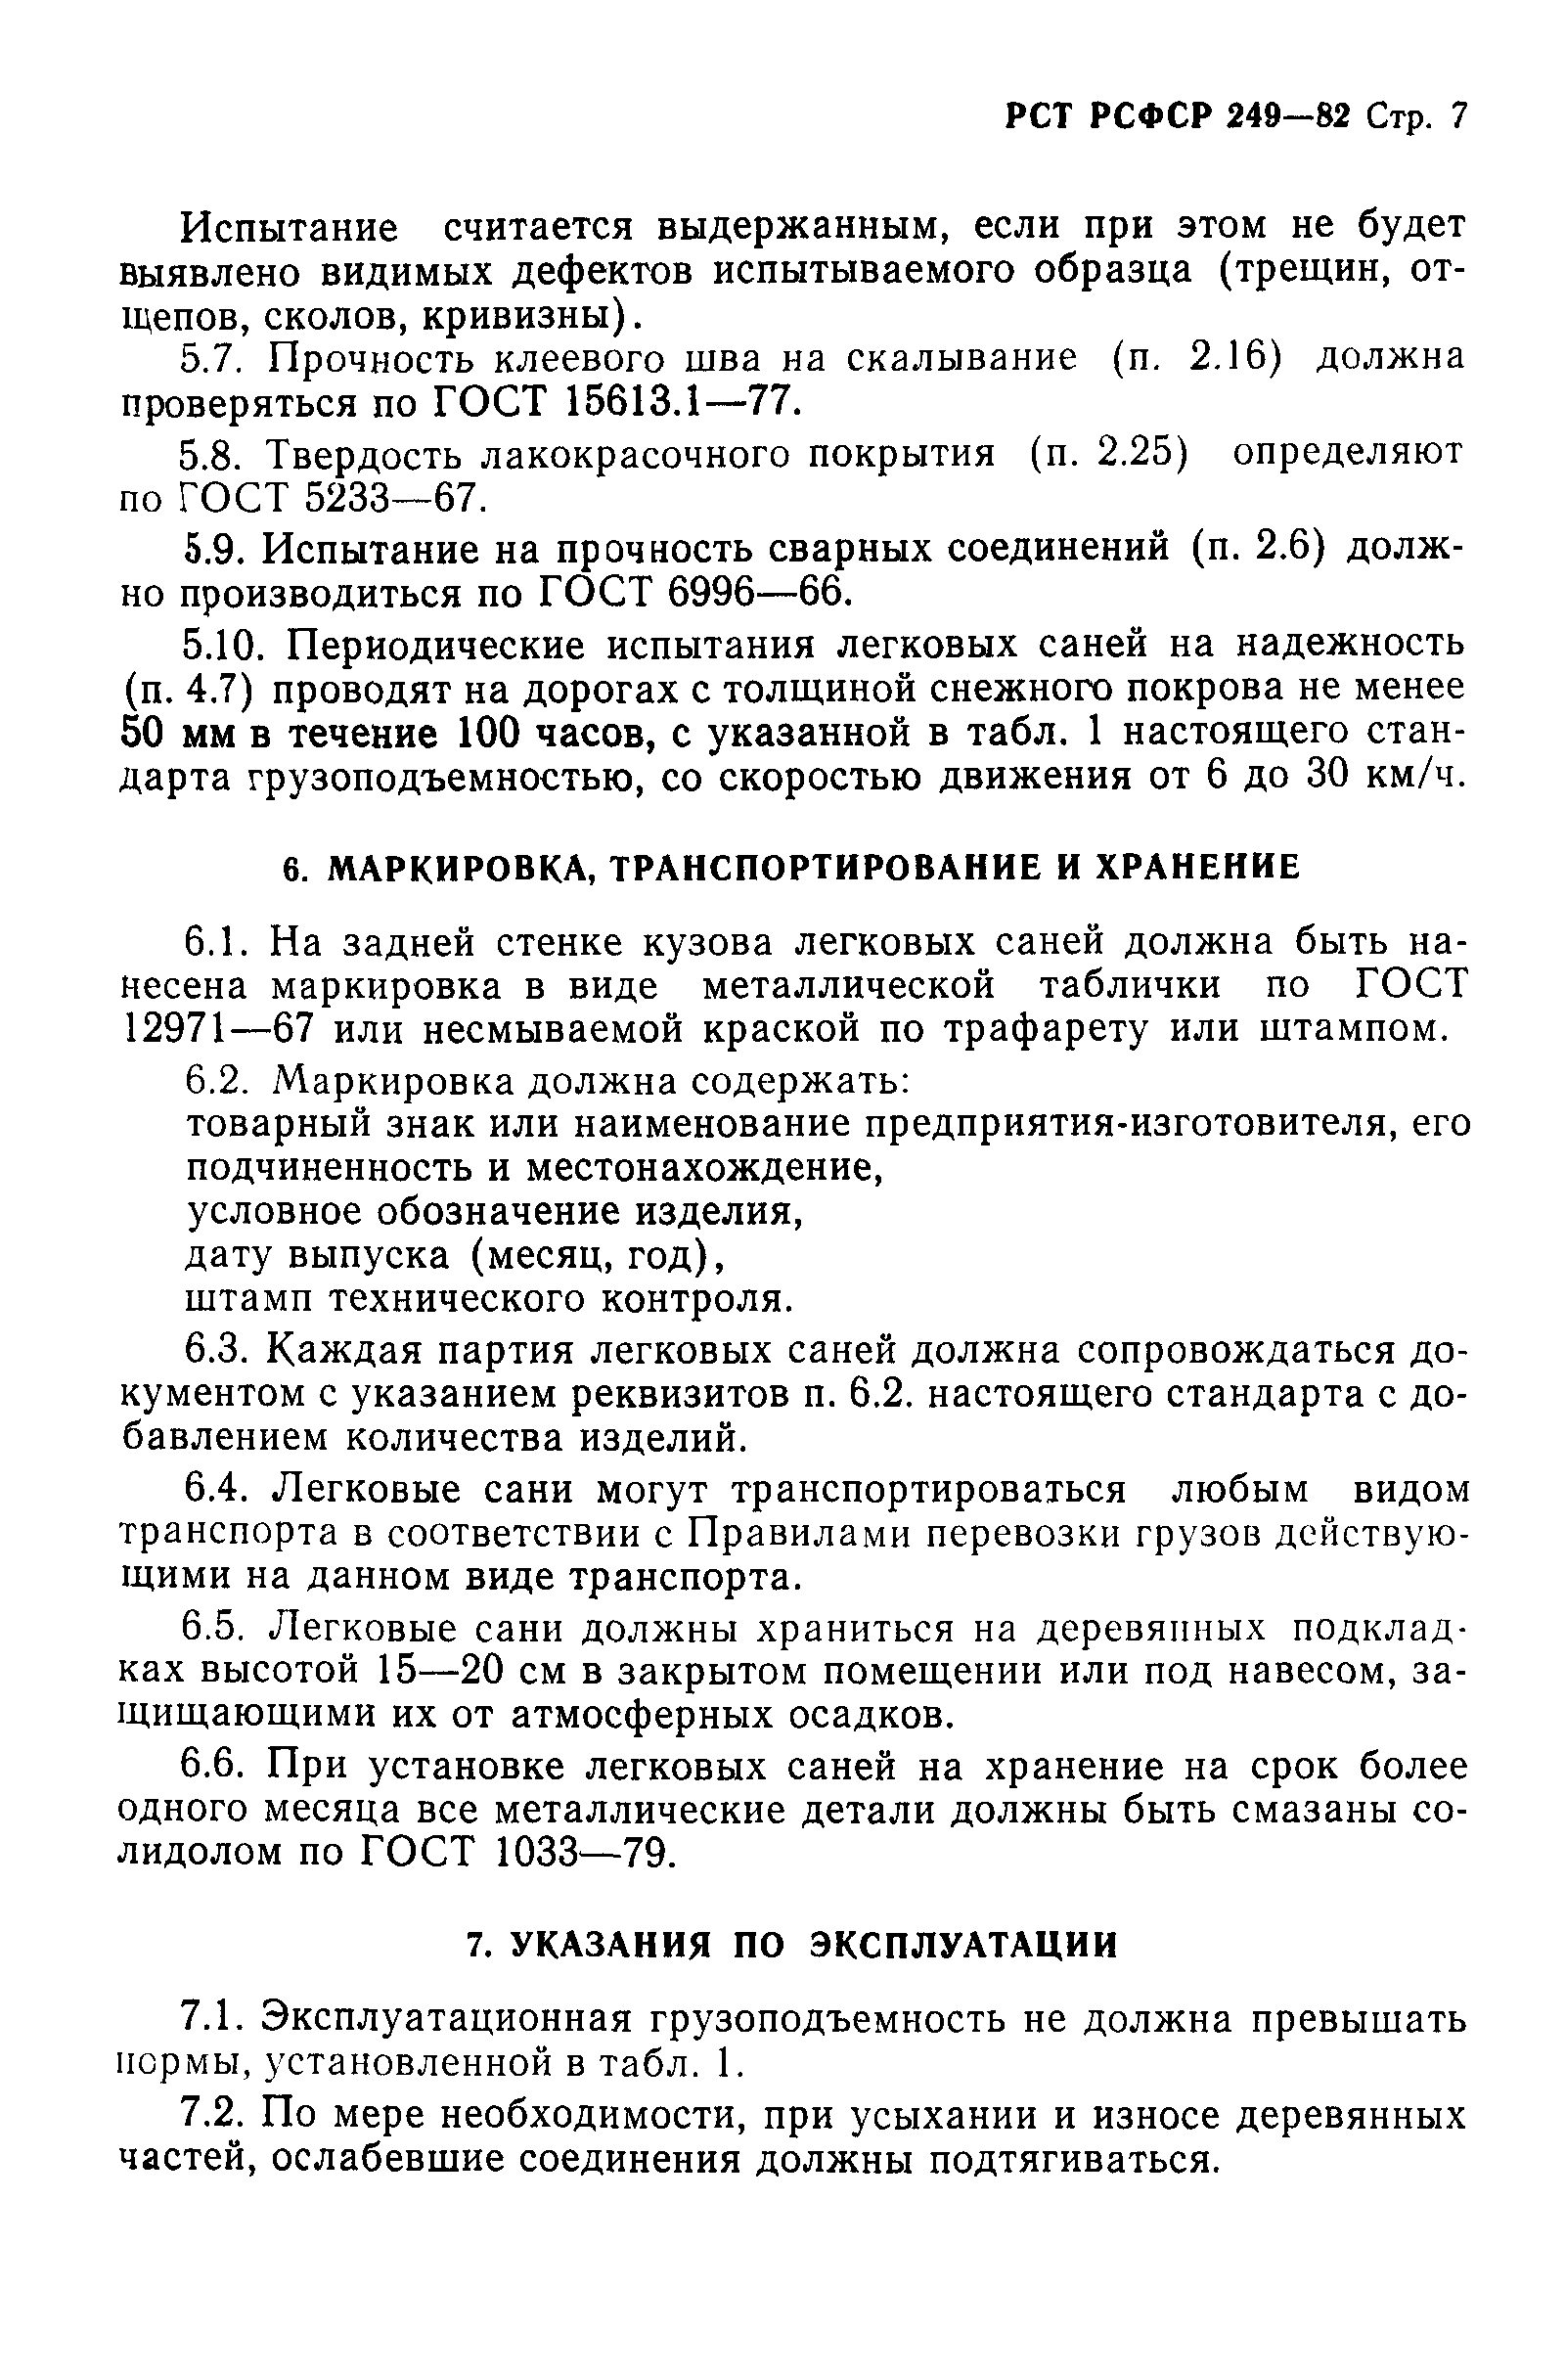 РСТ РСФСР 249-82